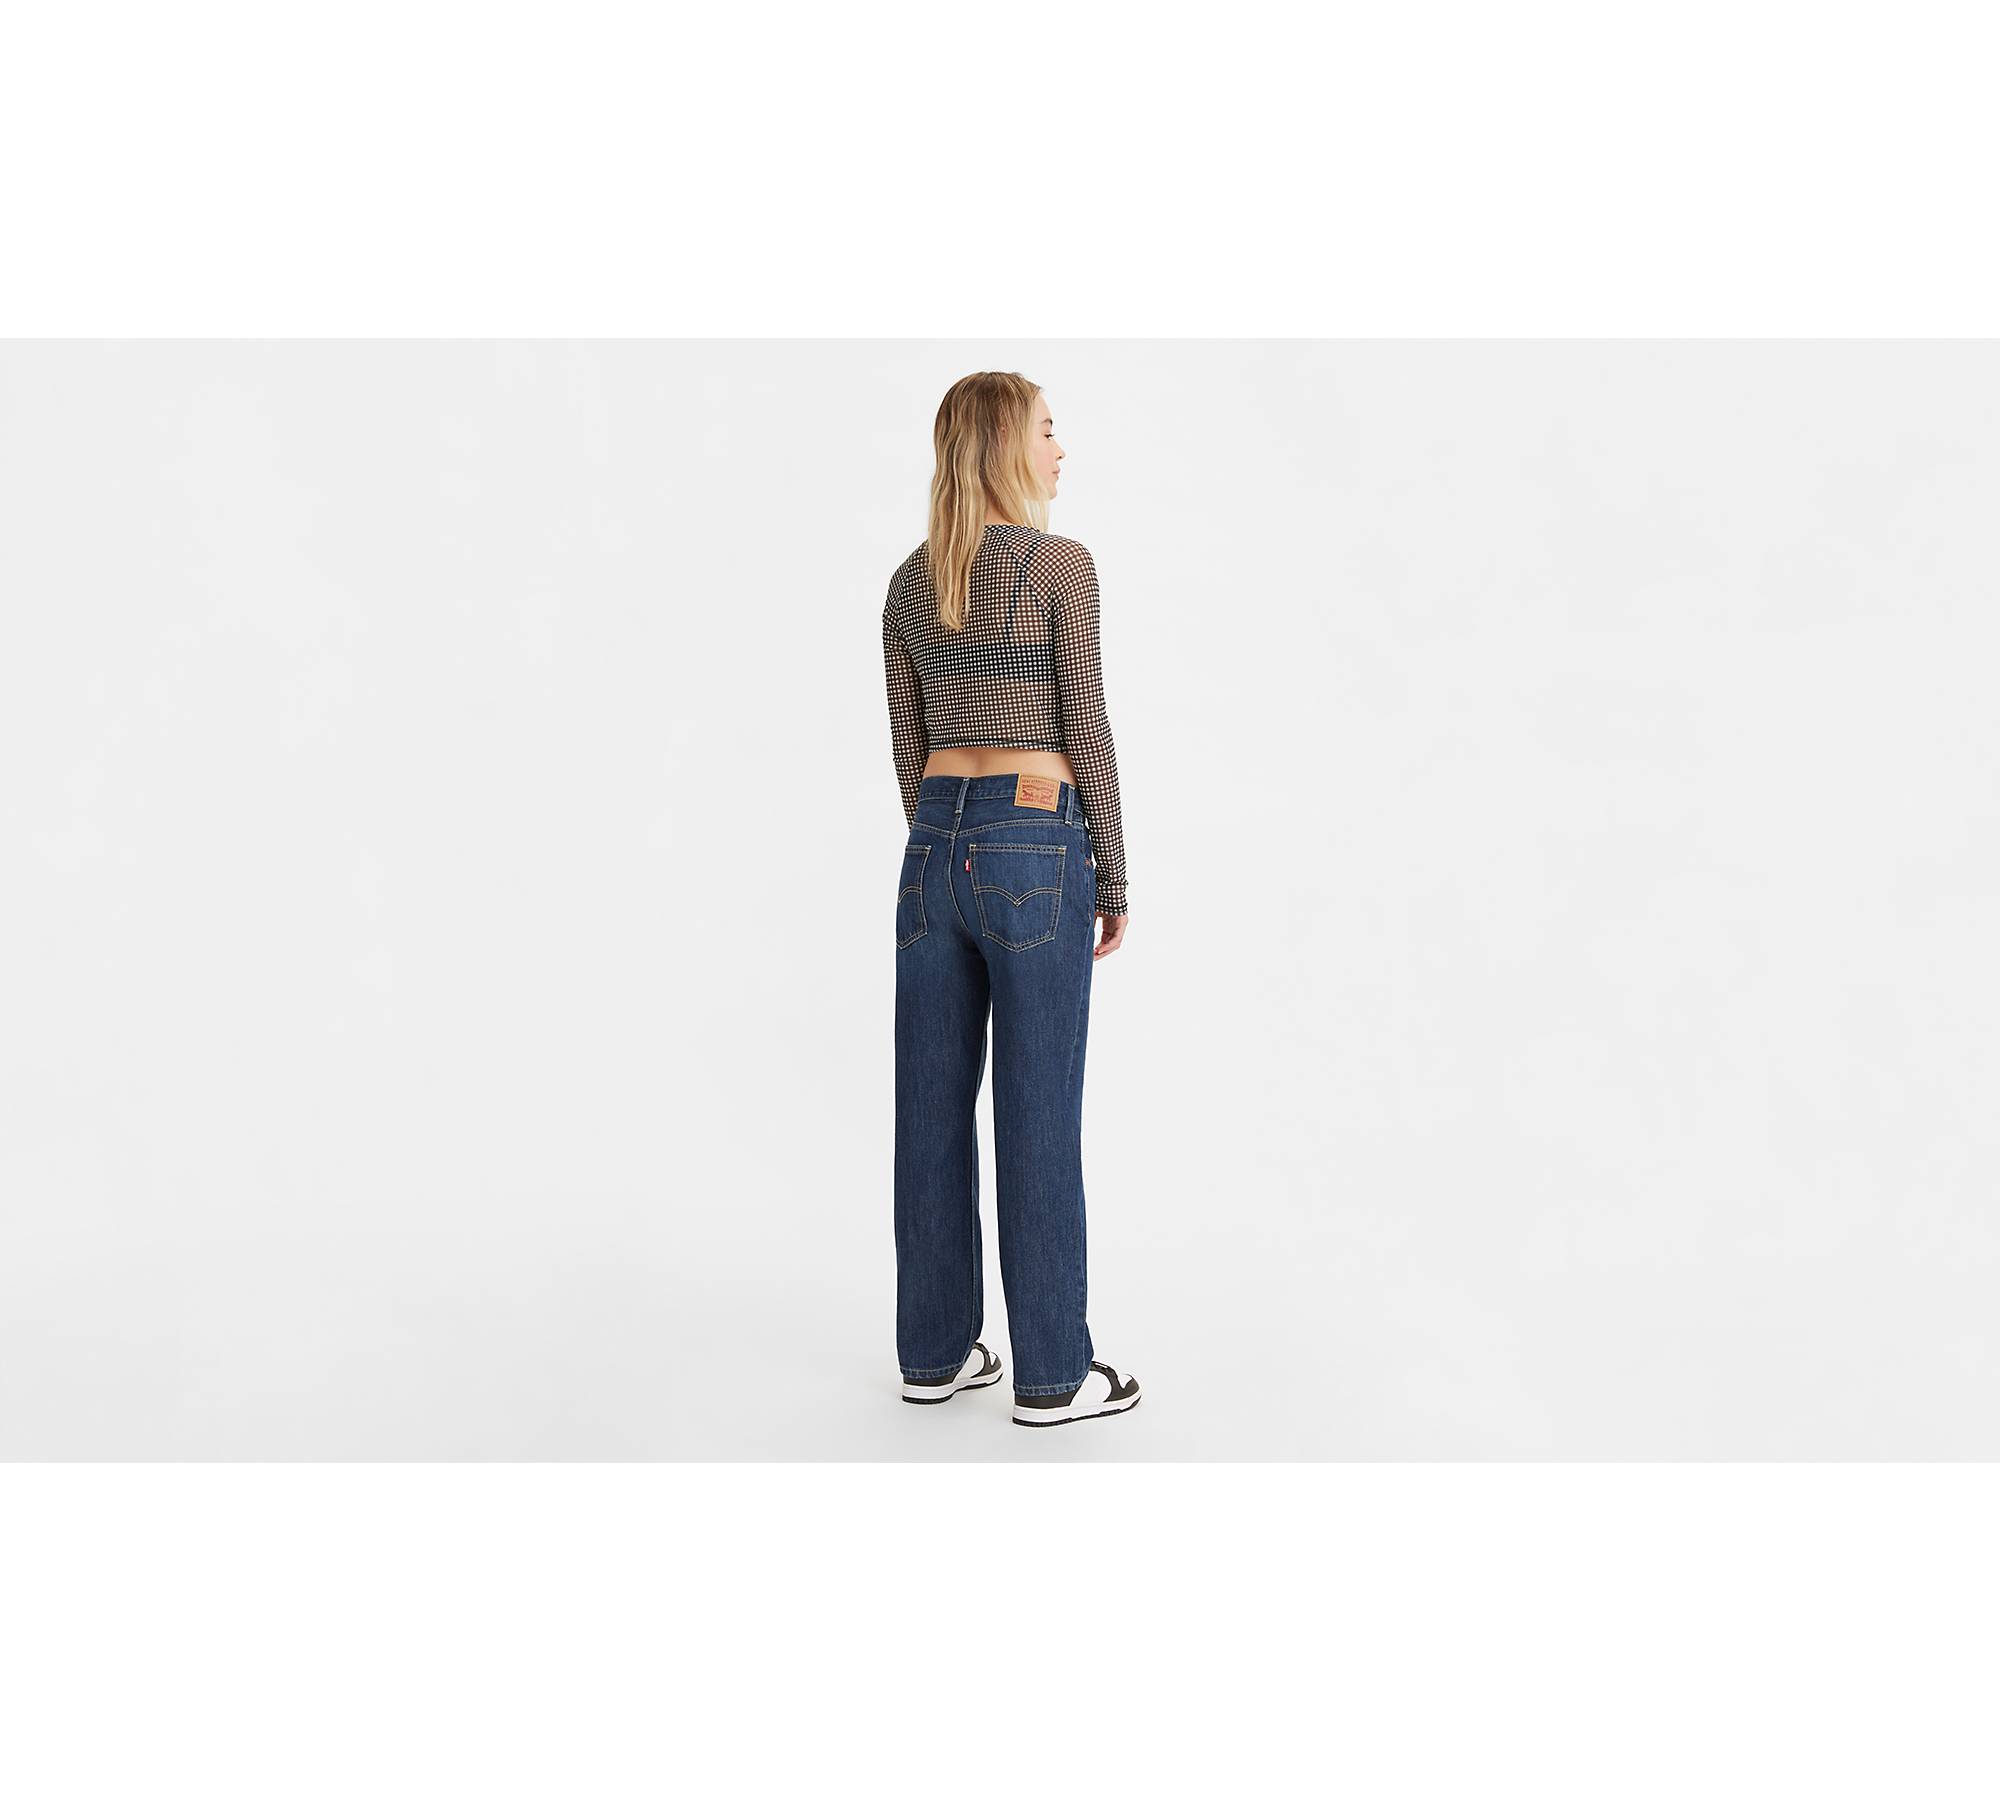 Levi's® Women's Low Pro Loose Fit Jeans